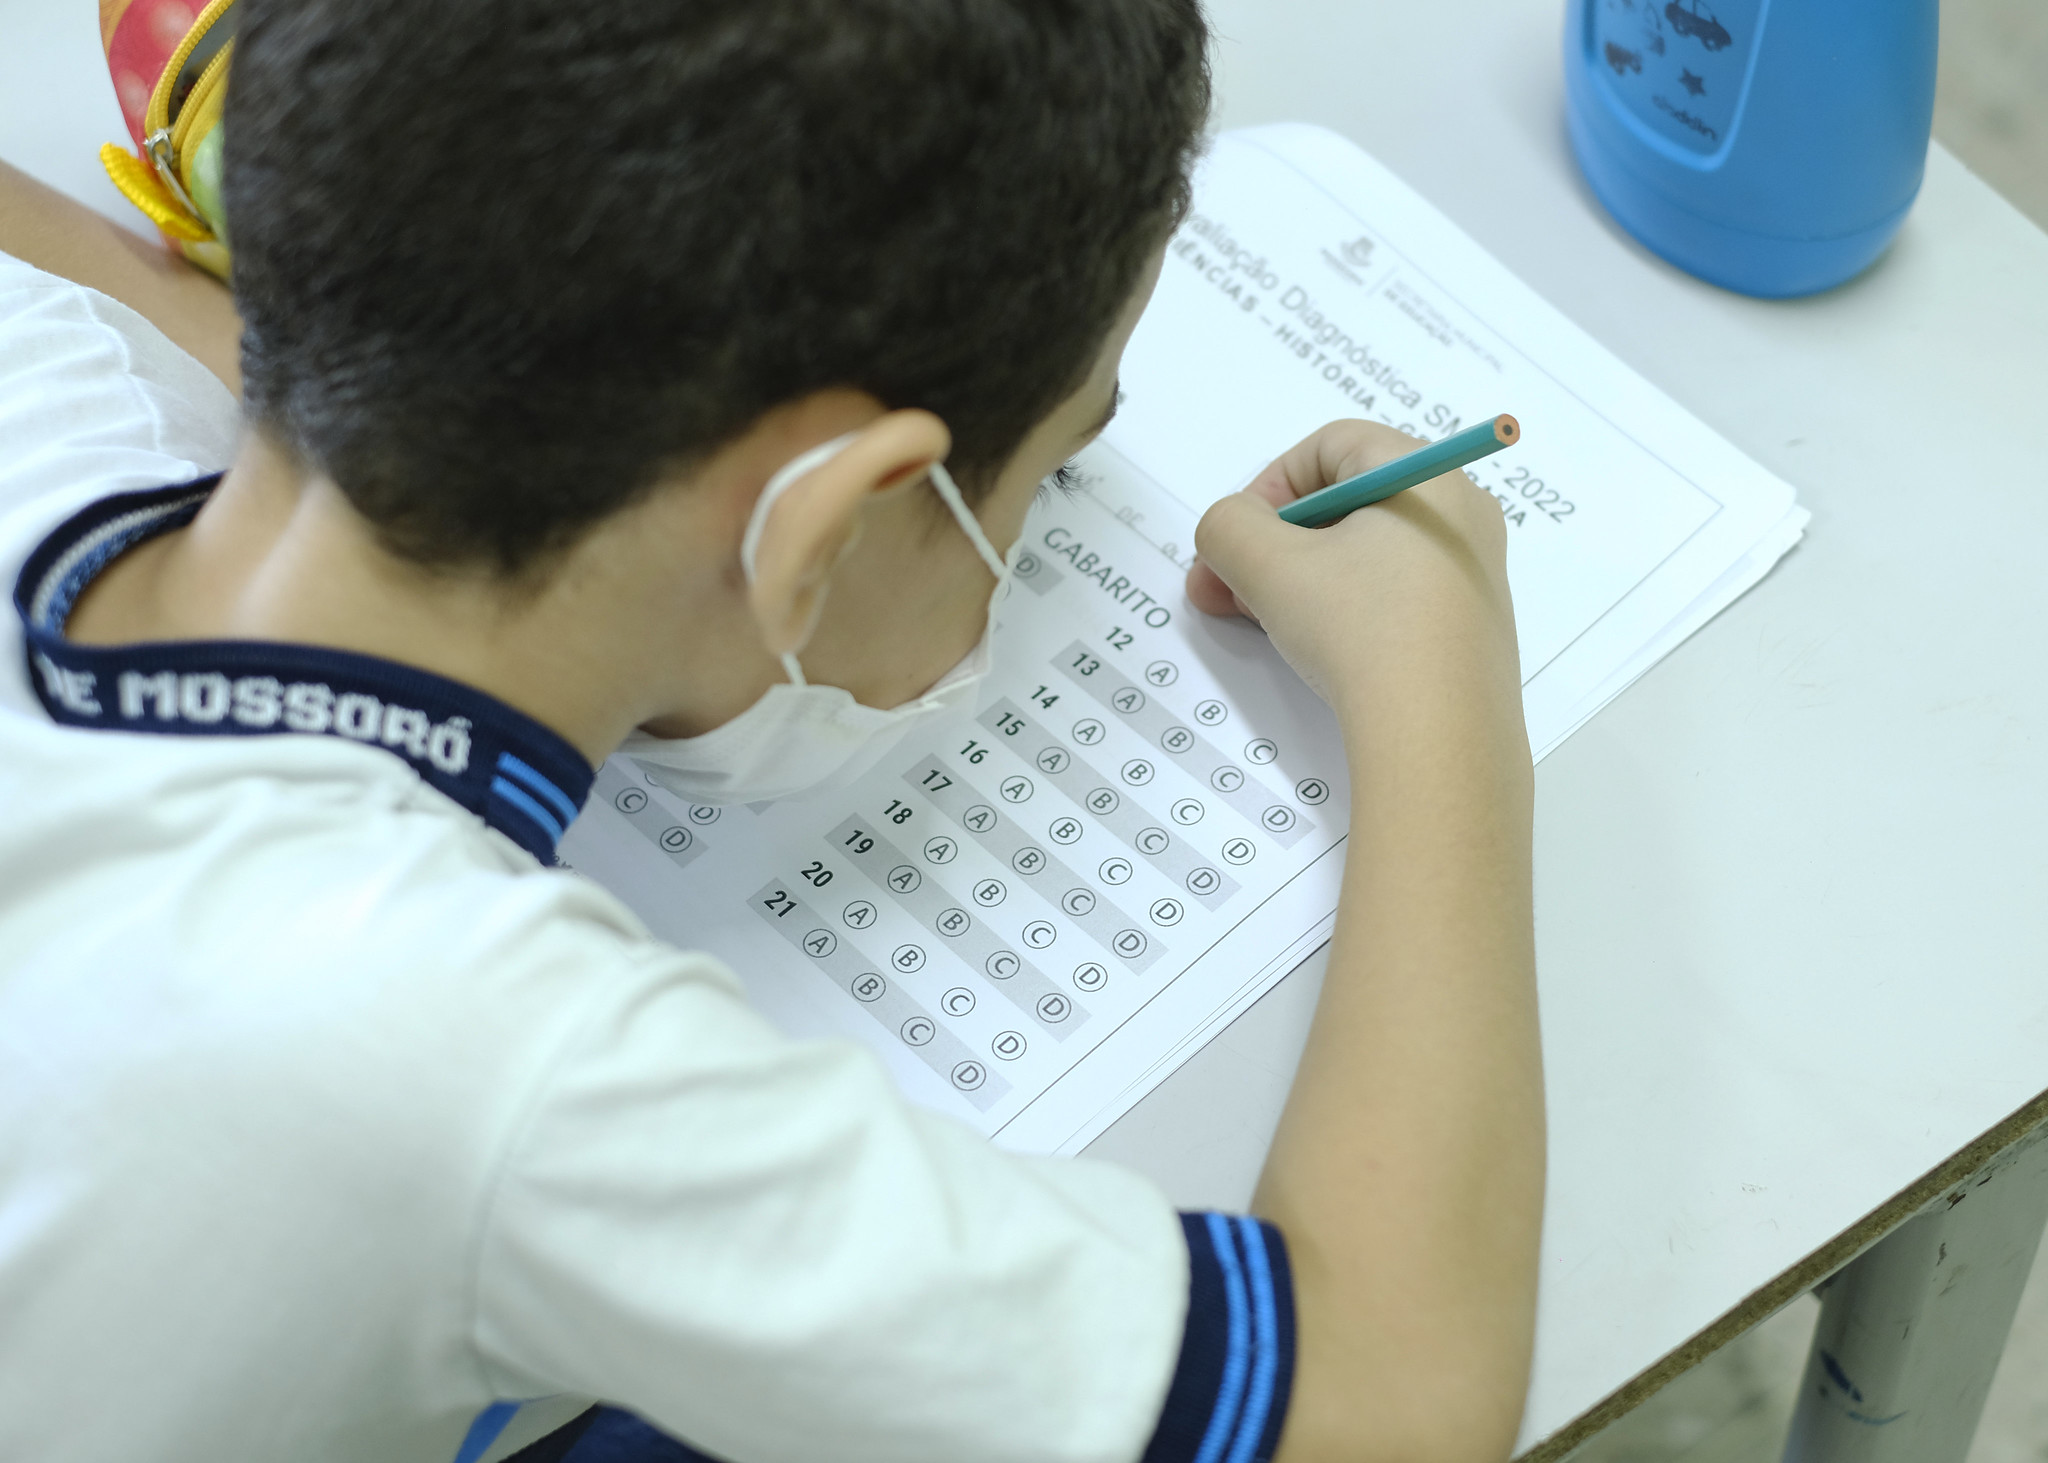 Secretaria de Educação aplica avaliações diagnósticas em escolas da Rede Municipal de Mossoró